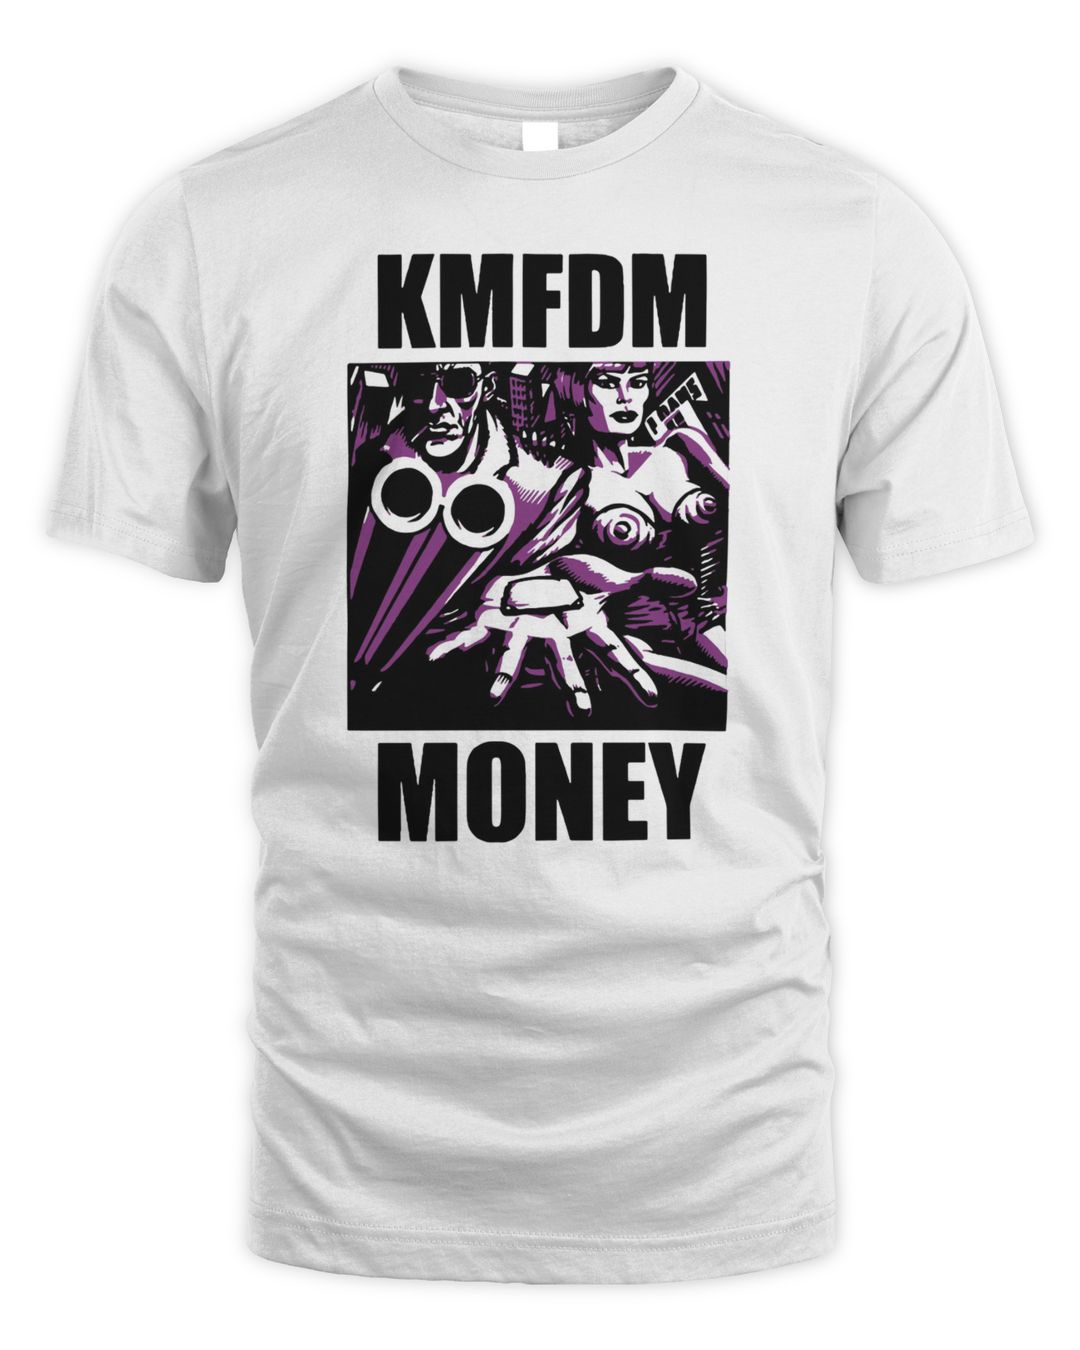 Kmfdm Merch Money Shirt